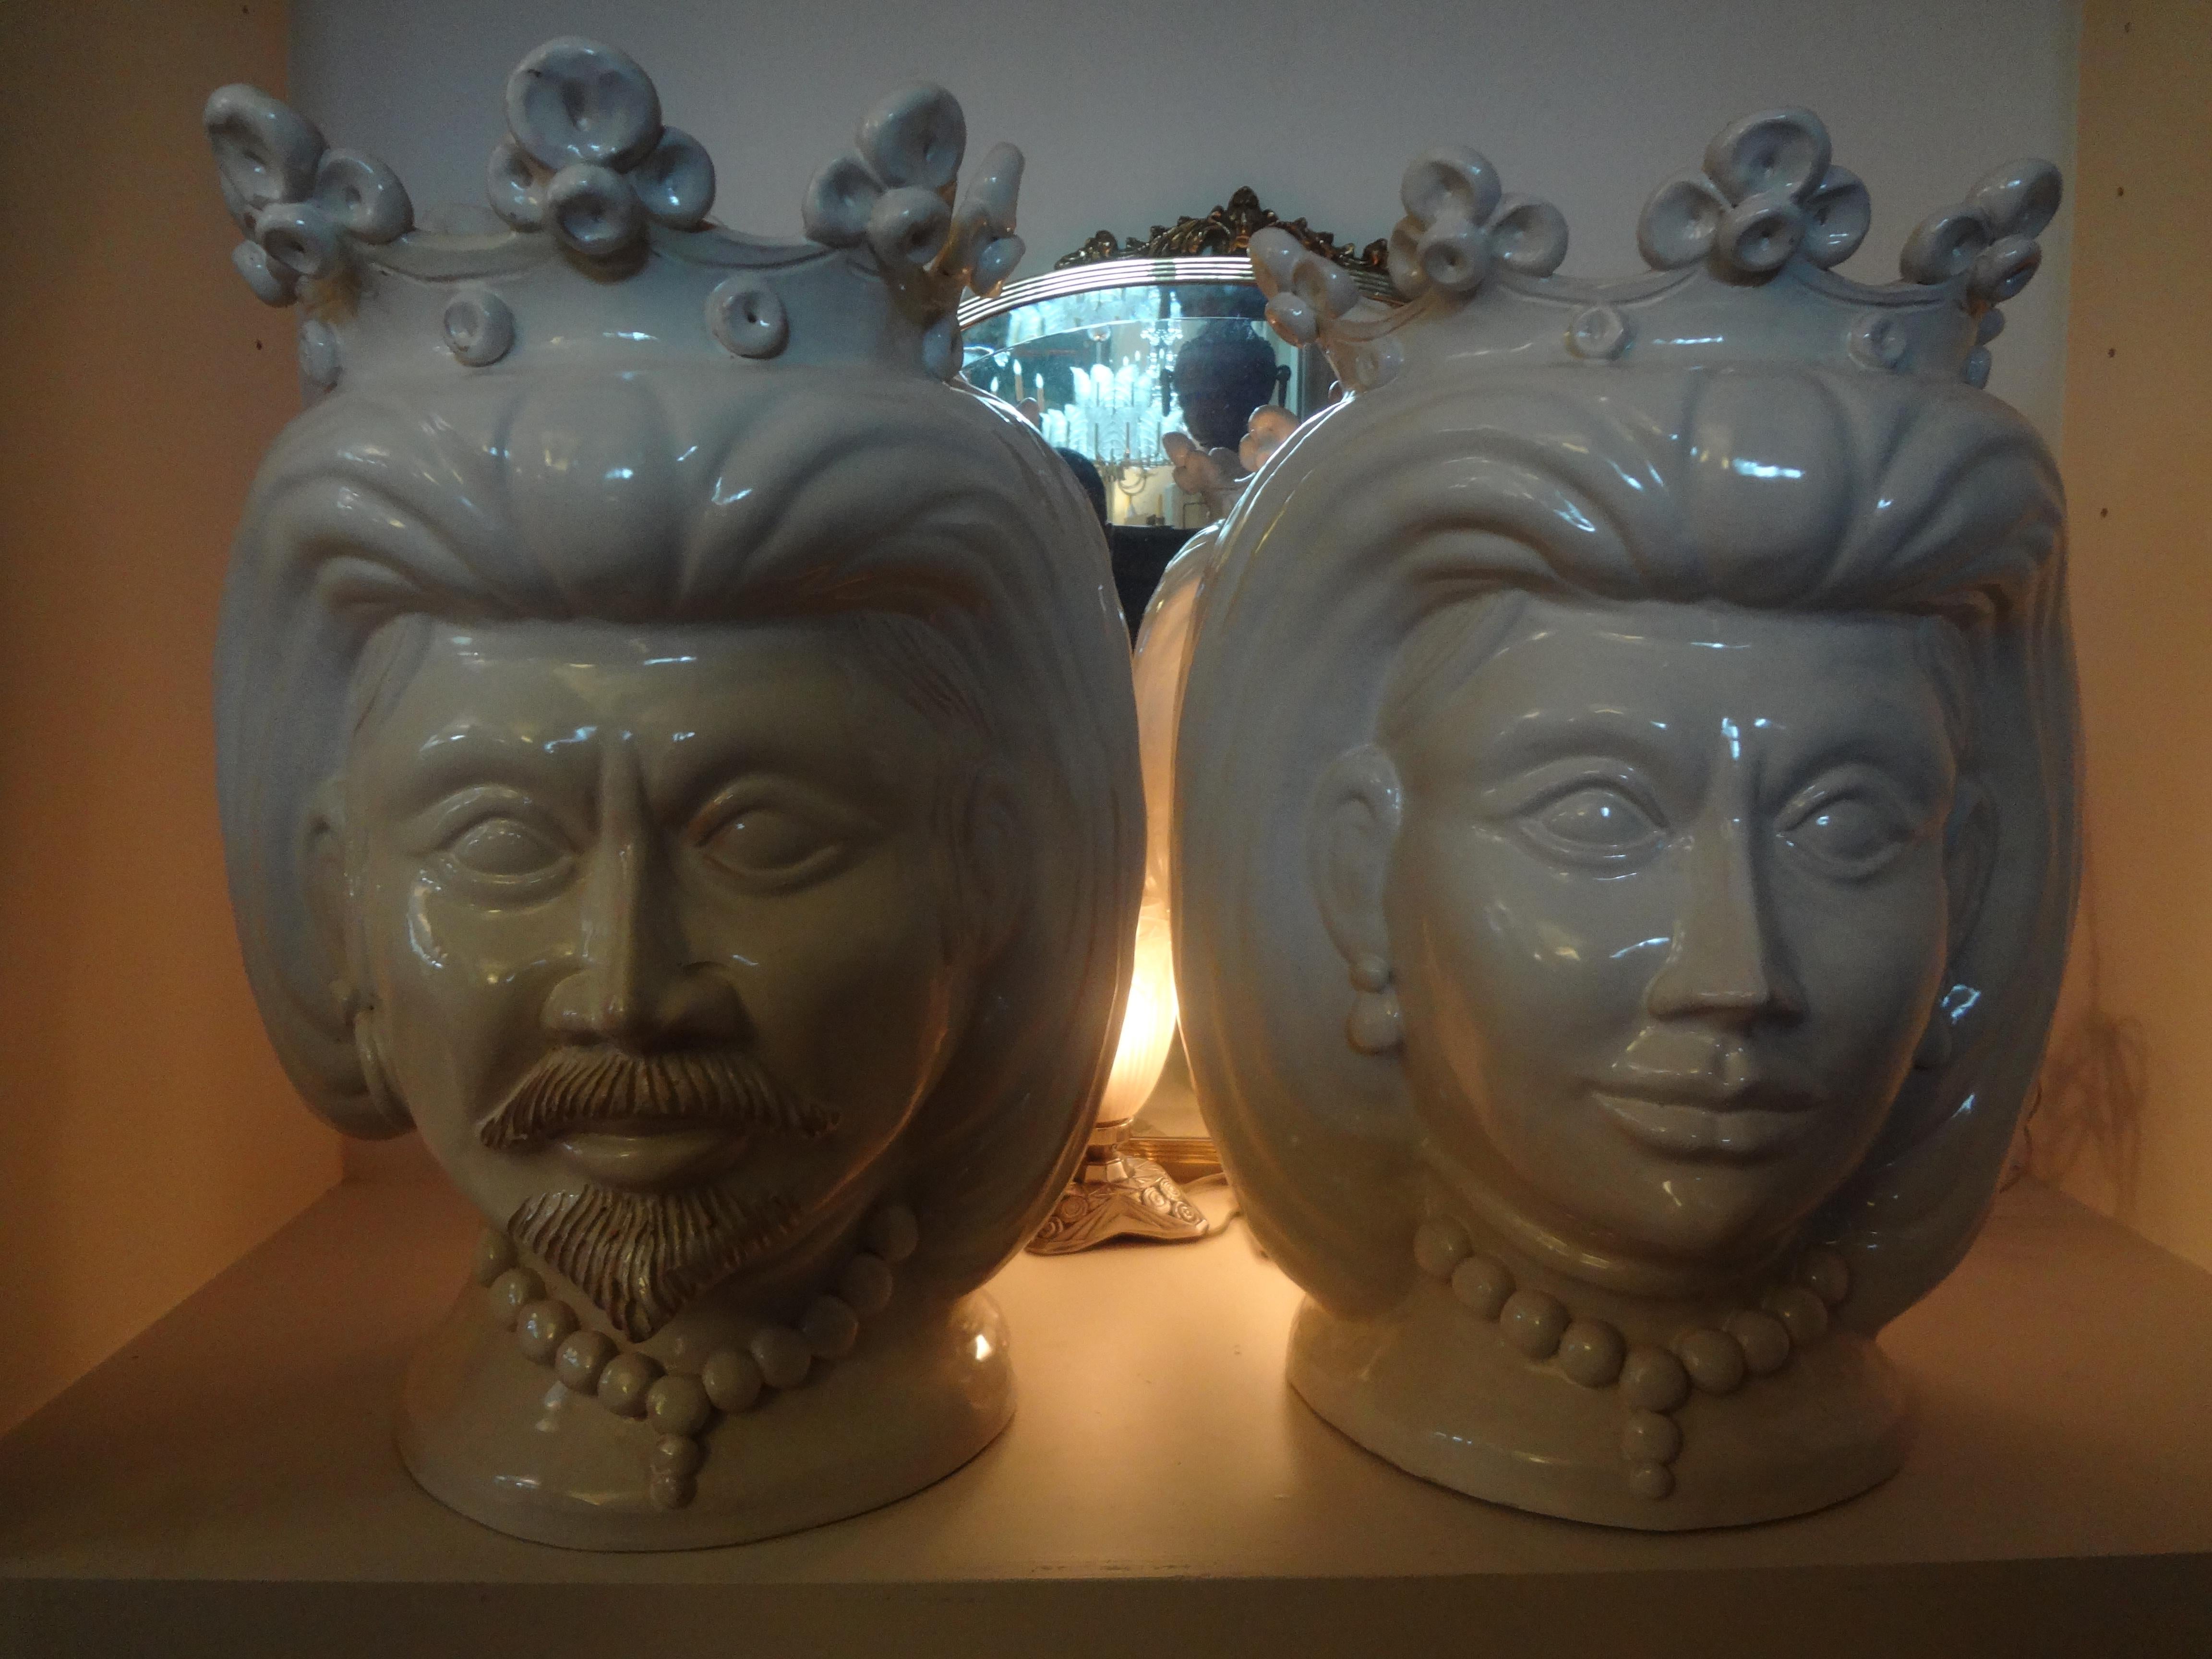 Exceptionnelle paire de bustes en terre cuite émaillée blanche italienne du 20e siècle, têtes jardinières, jardinières, l'un une femme, l'autre un homme. Cette paire de sculptures étonnantes est signée F. Boria Caltagirone, une entreprise sicilienne